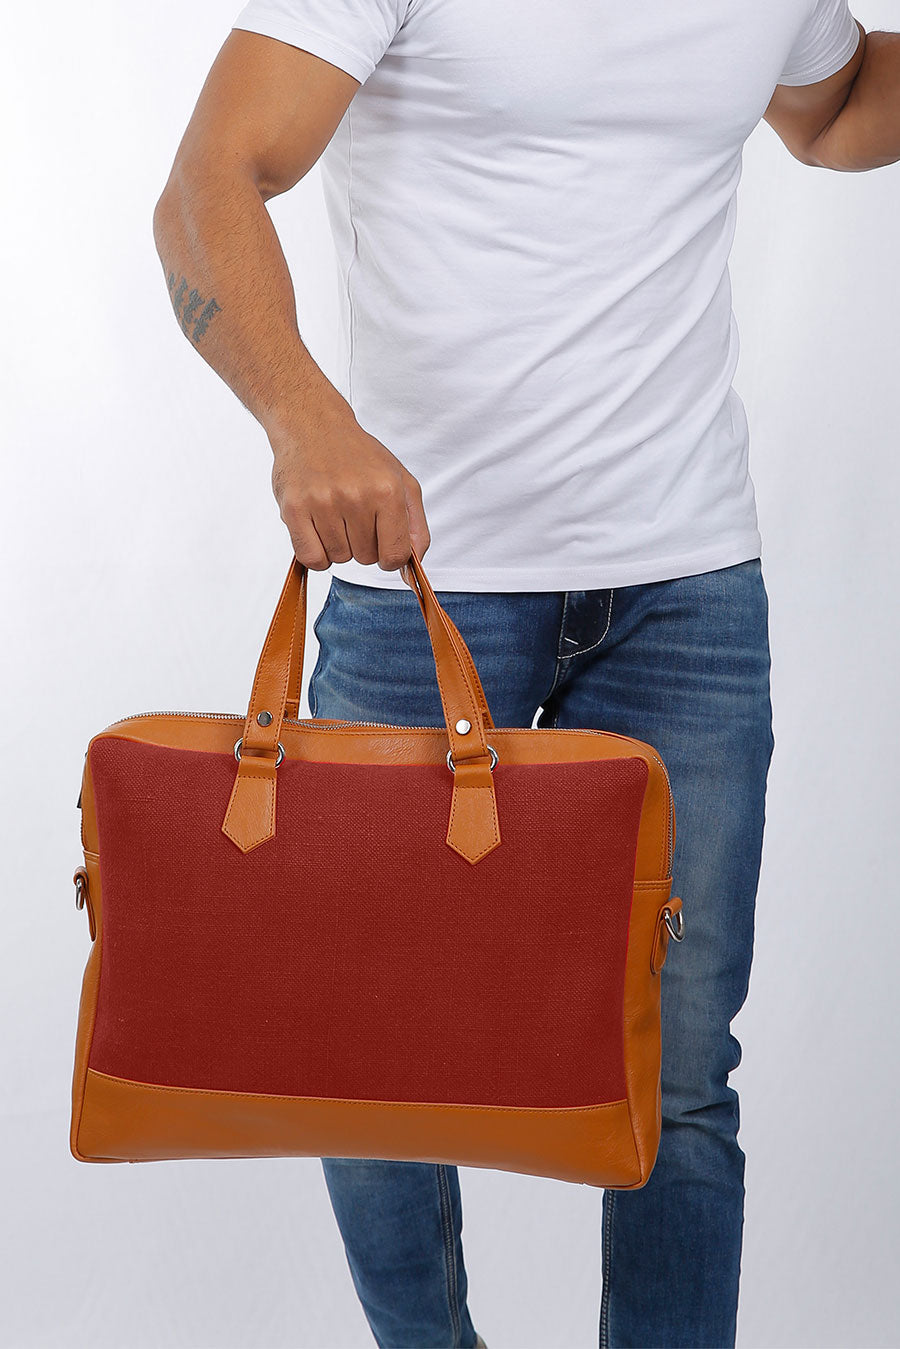 Ross Soft Jute 15 Inch Laptop Bag for Men